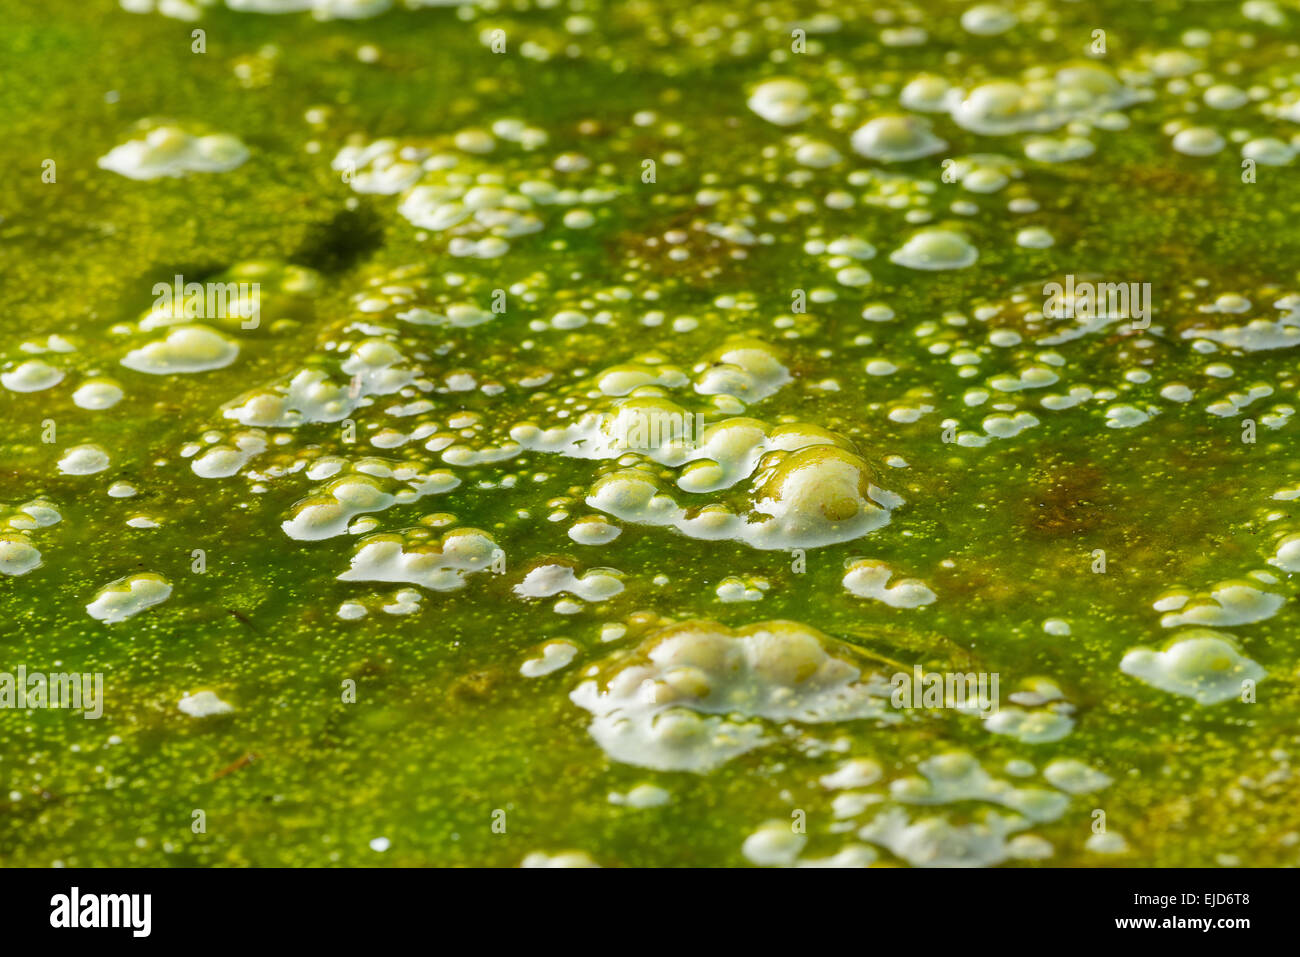 Densa cobertura de algas filamentosas alga verde brillante con masas de burbujas de gas metano atrapado oxígeno vegetación putrefacta debajo Foto de stock